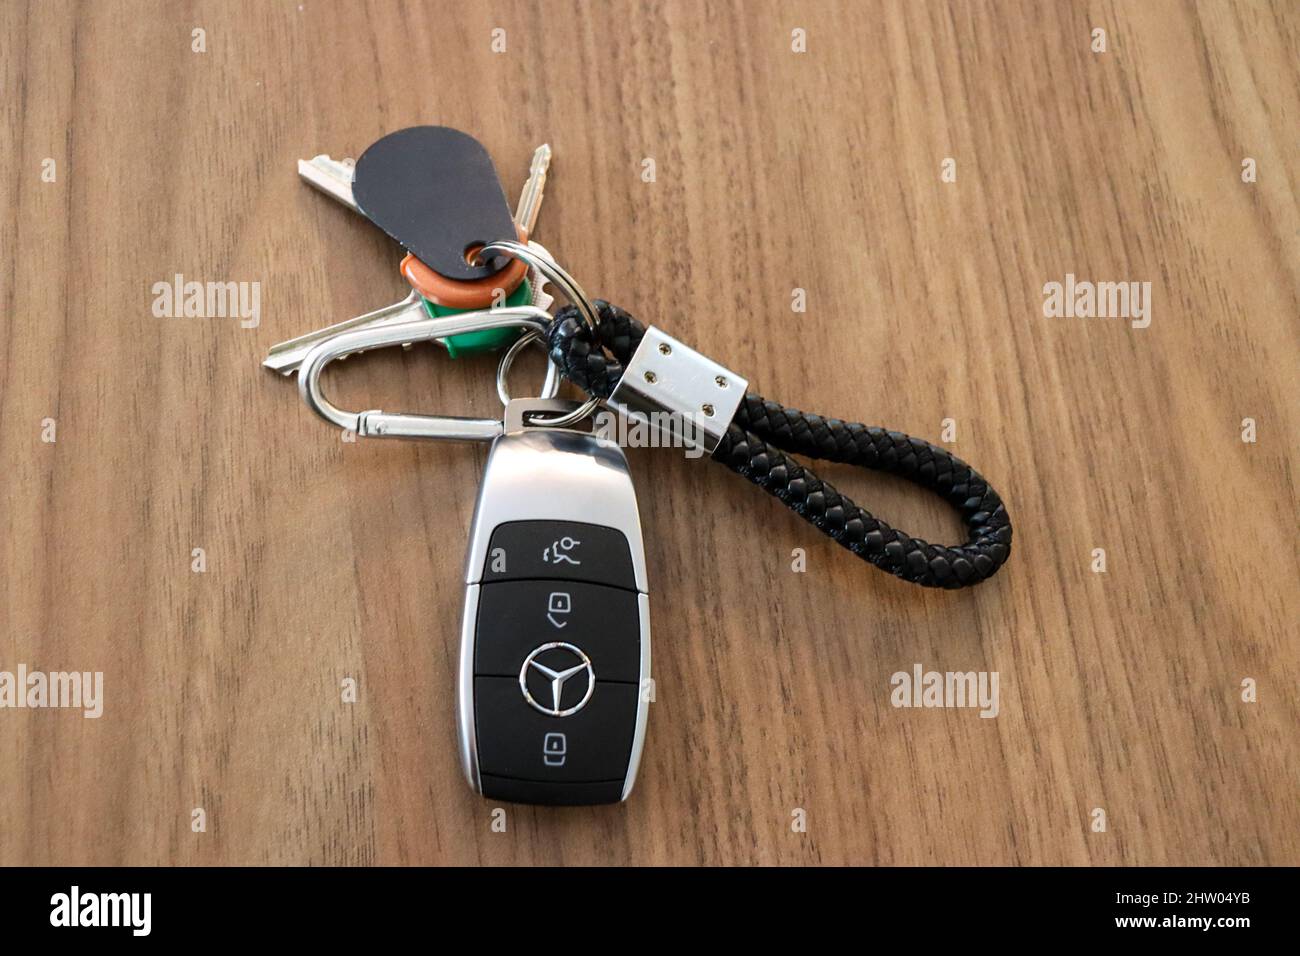 Car key mercedes immagini e fotografie stock ad alta risoluzione - Alamy